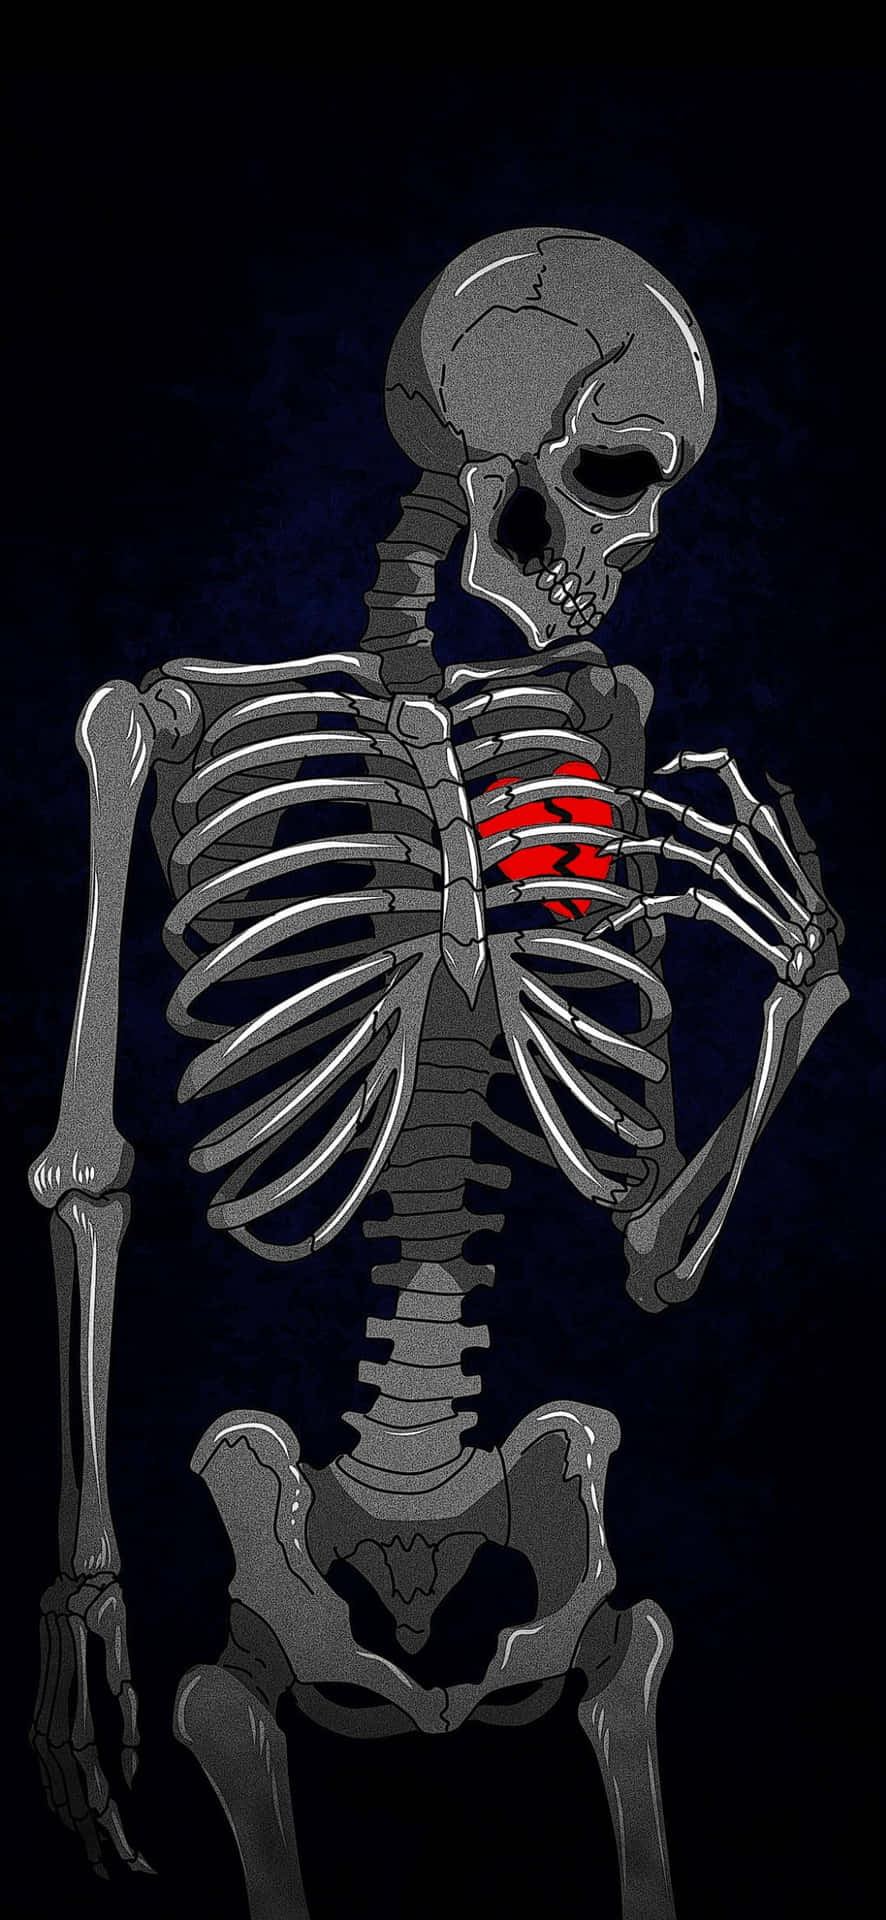 Umesqueleto Com Um Coração Vermelho Em Seu Peito.